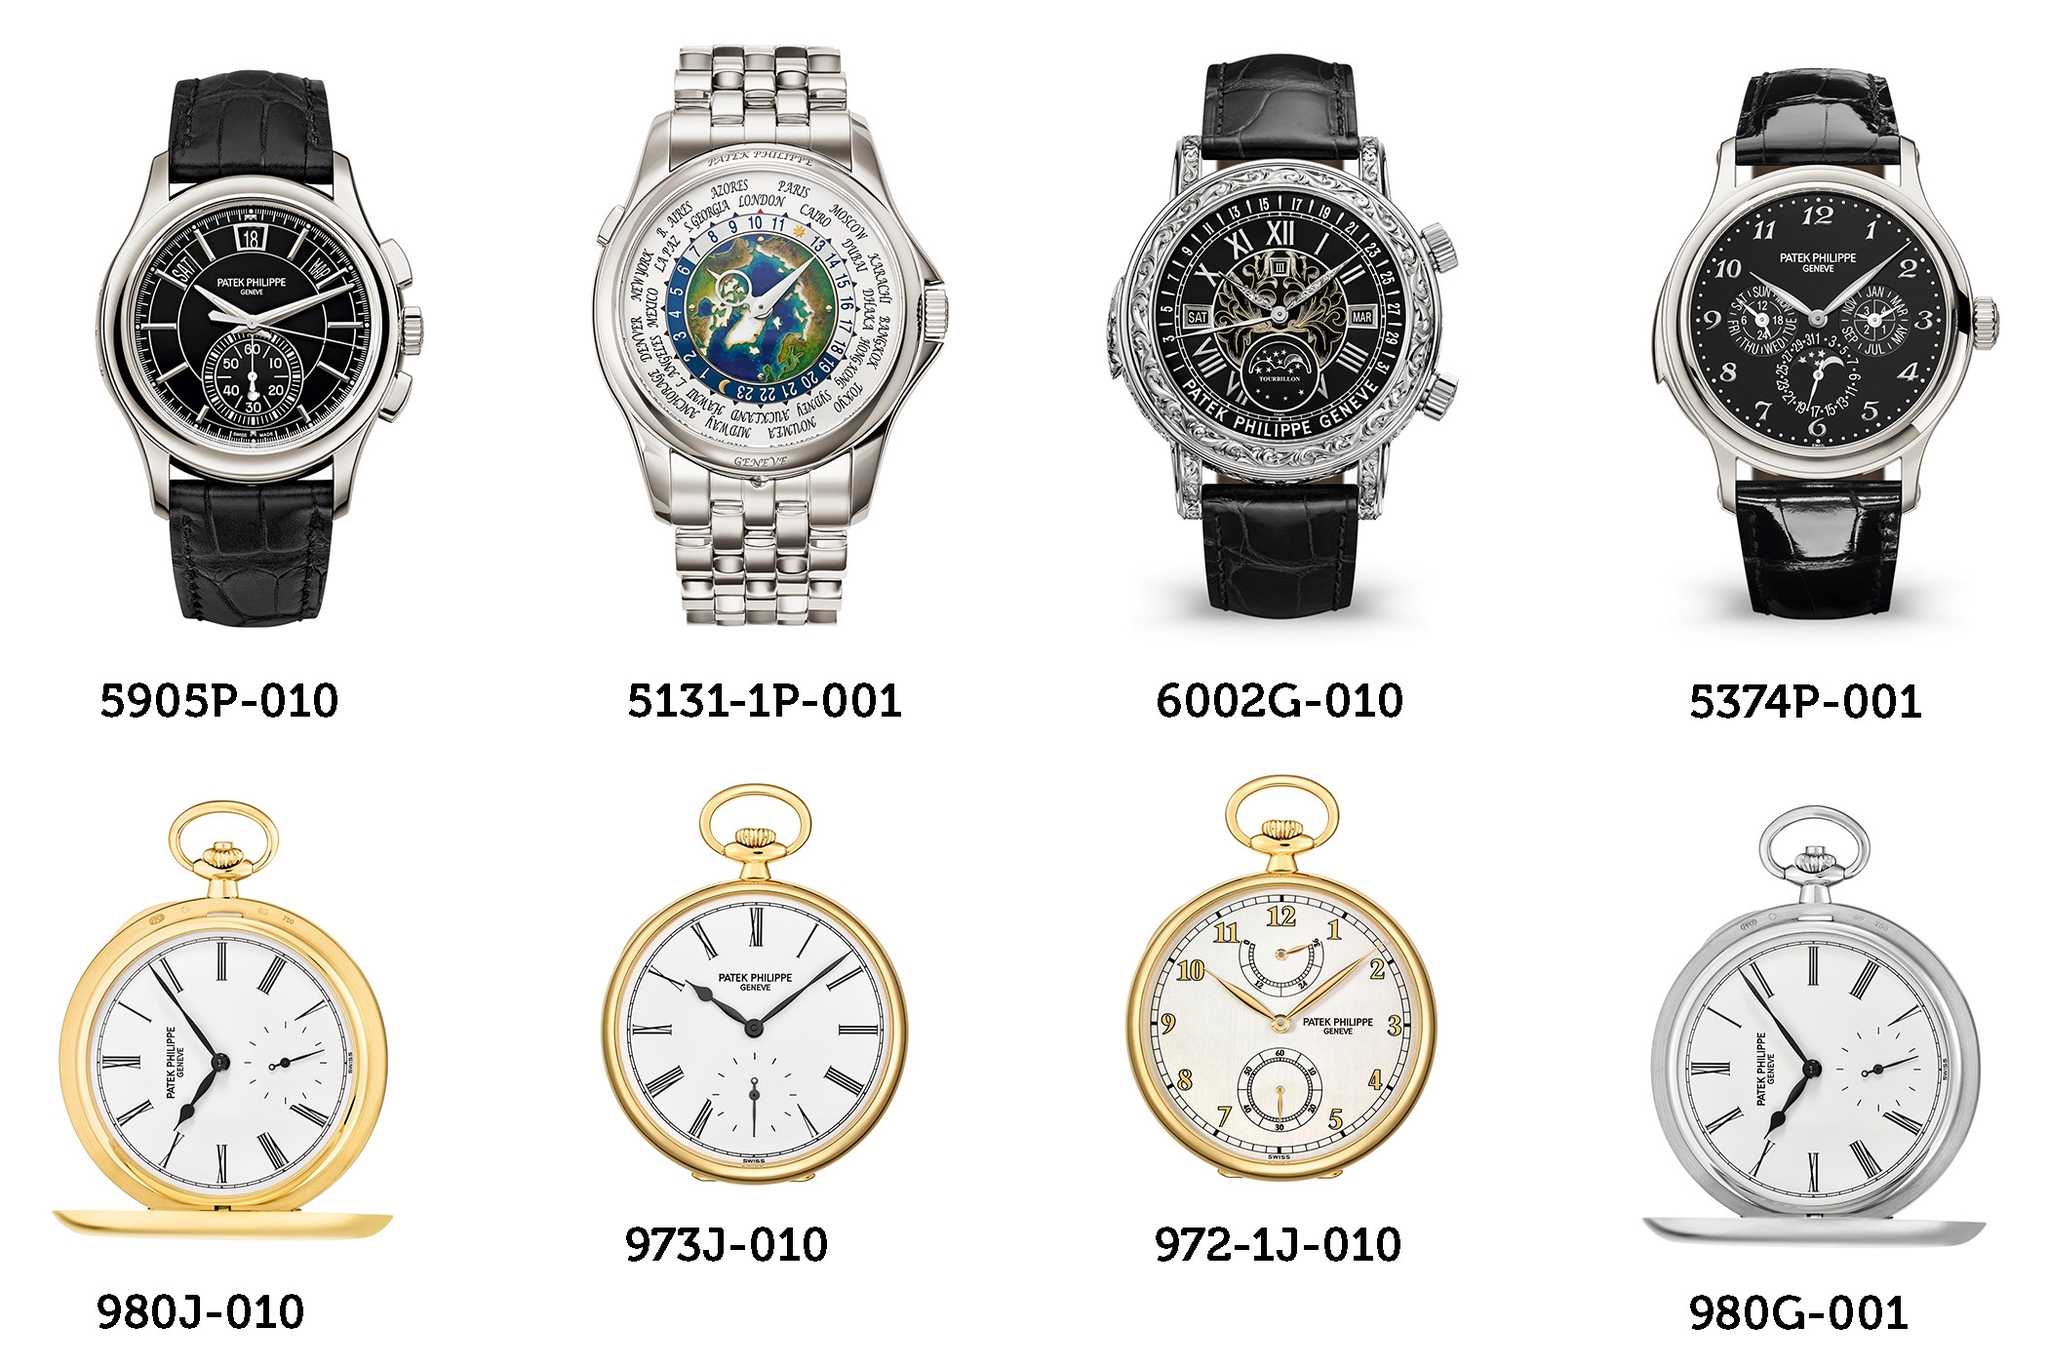 Thương hiệu Patek Philippe sẽ ngừng sản xuất Nautilus 5711/1A-010 và 16 mẫu đồng hồ khác